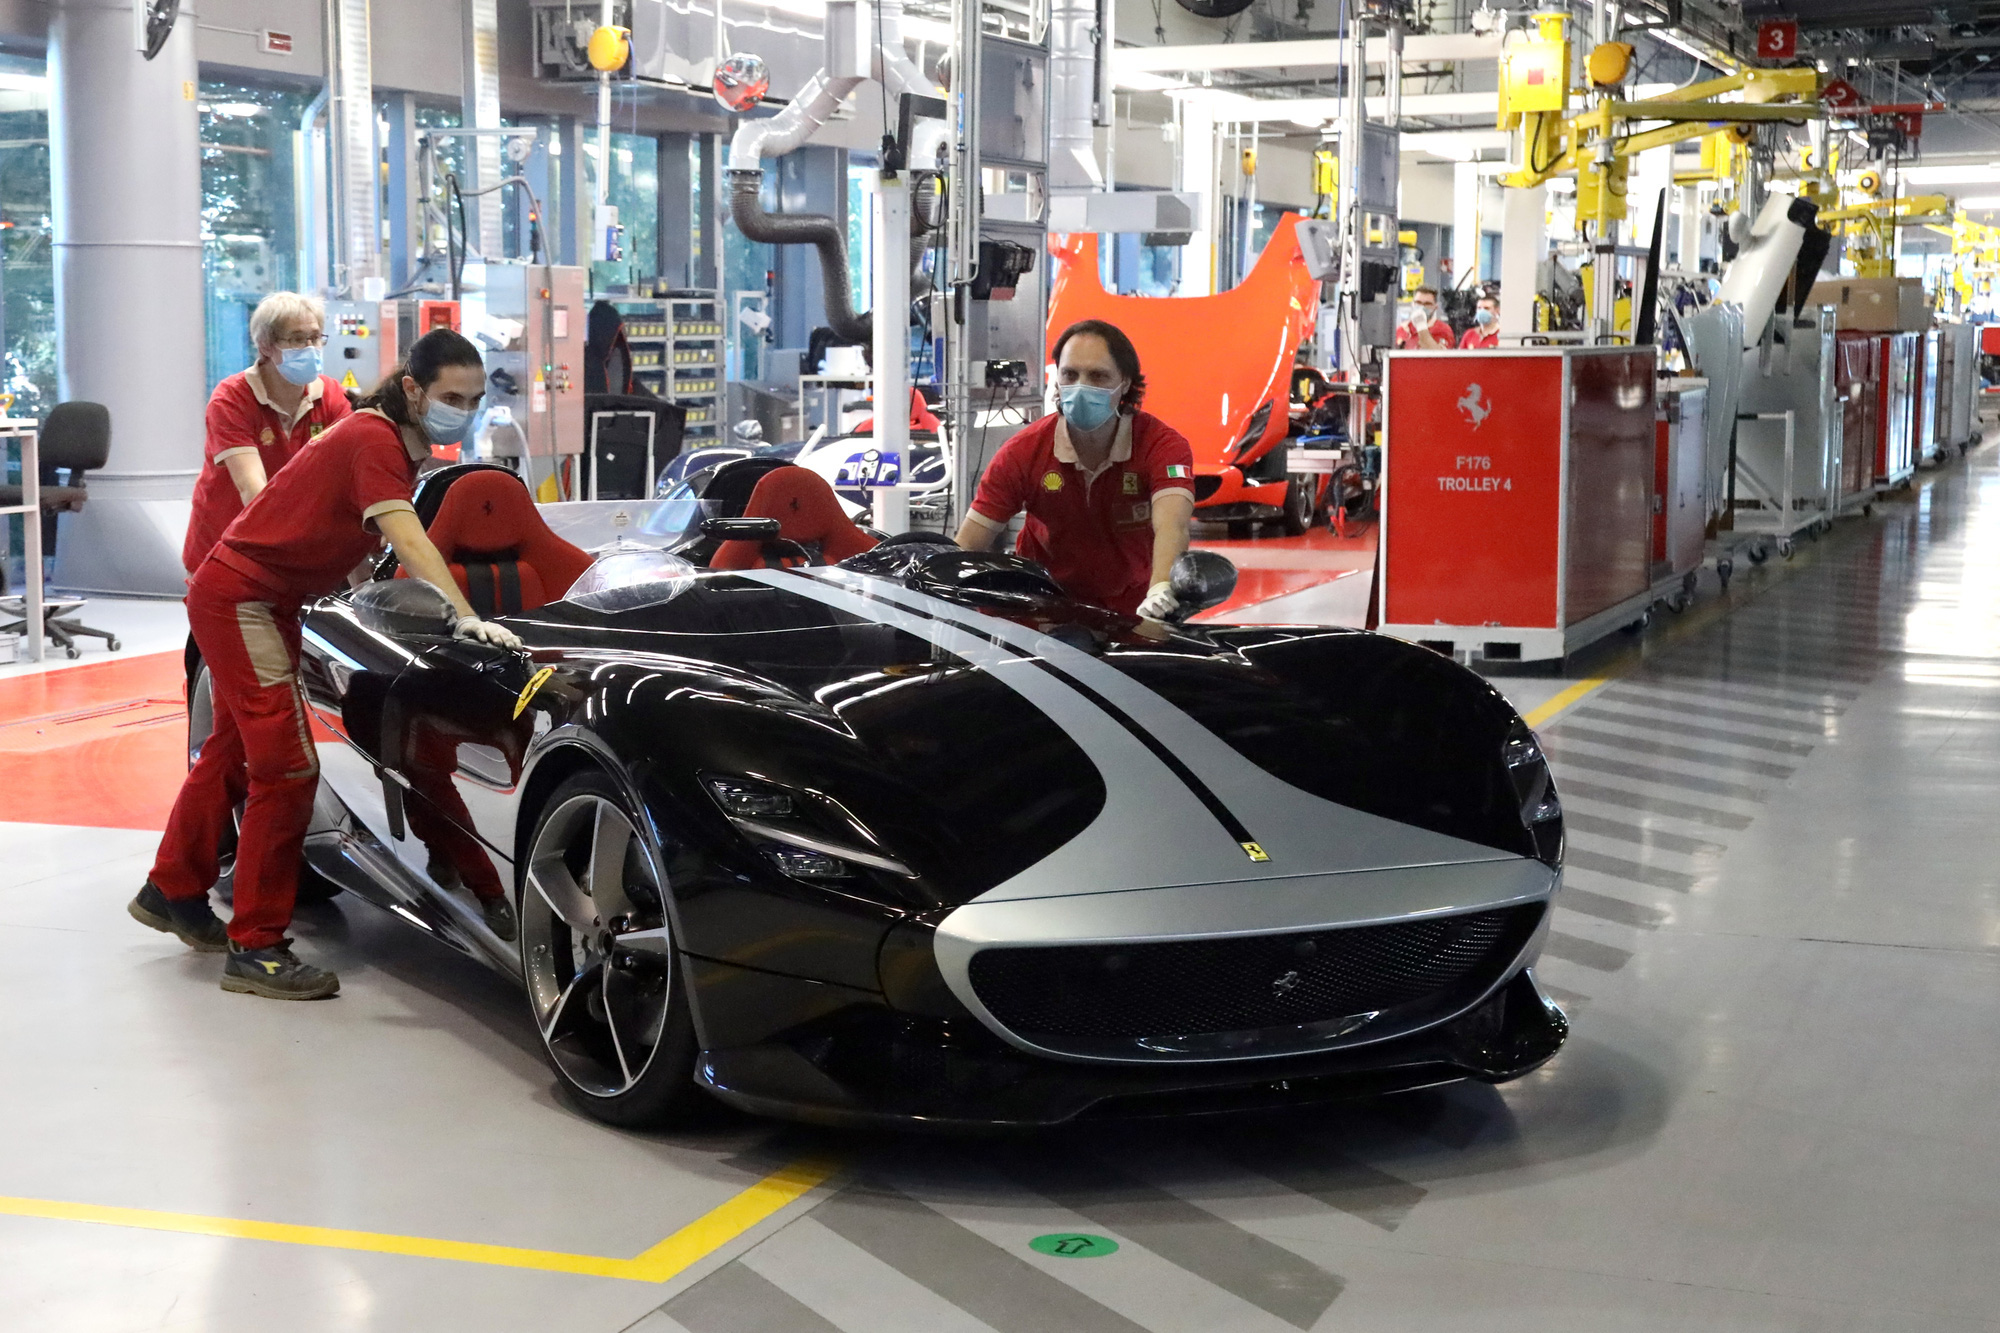 Hãng siêu xe Ferrari trở lại sản xuất sau đại dịch Covid-19 - Ảnh 1.